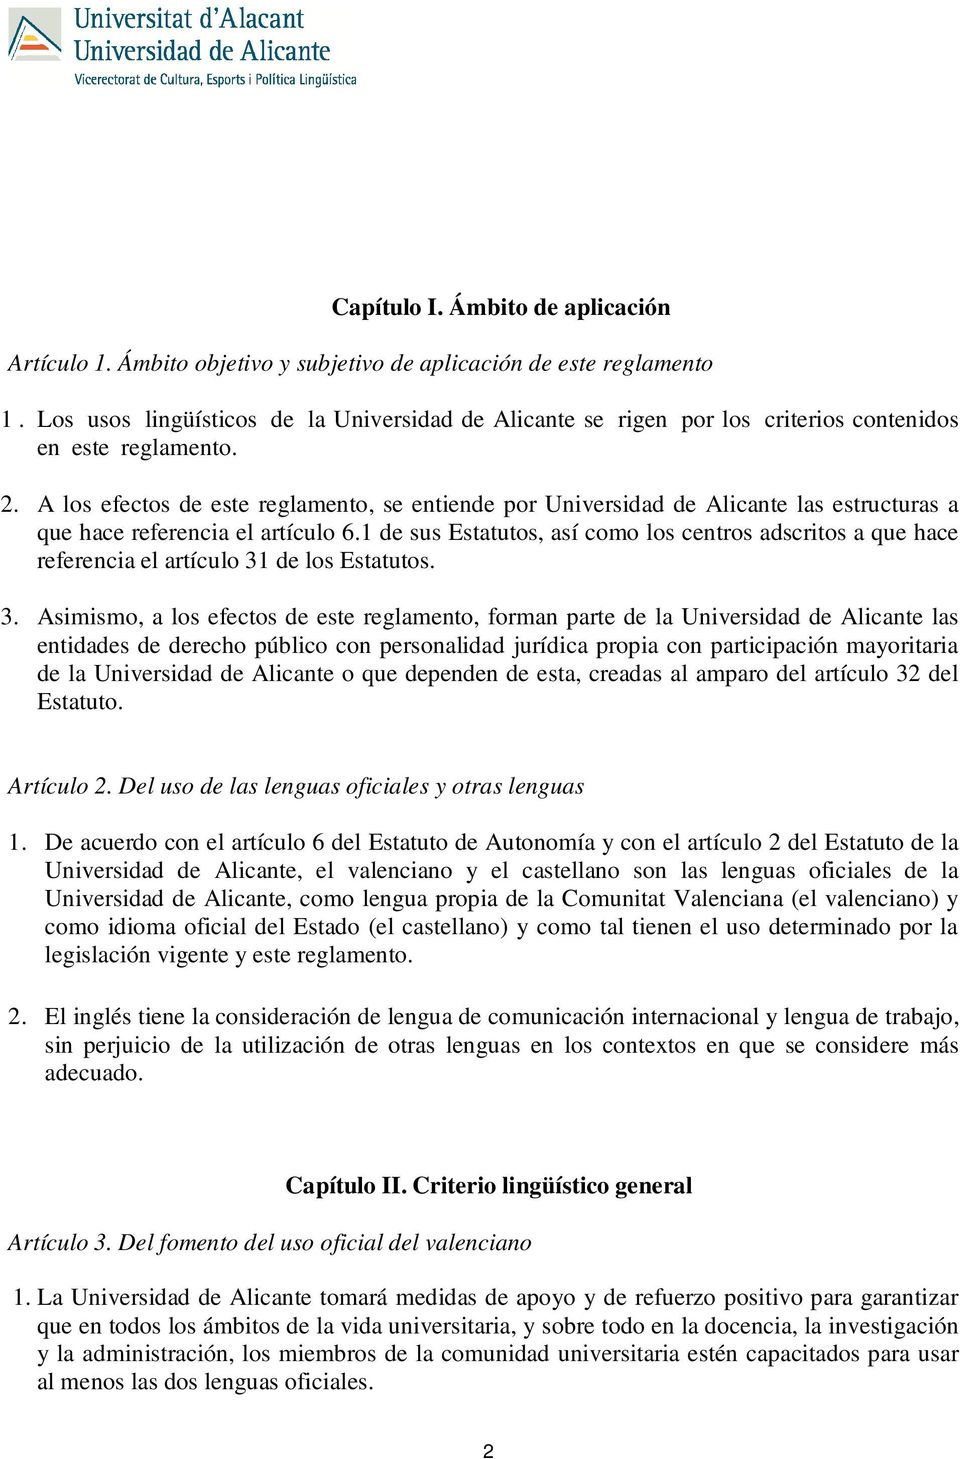 A los efectos de este reglamento, se entiende por Universidad de Alicante las estructuras a que hace referencia el artículo 6.